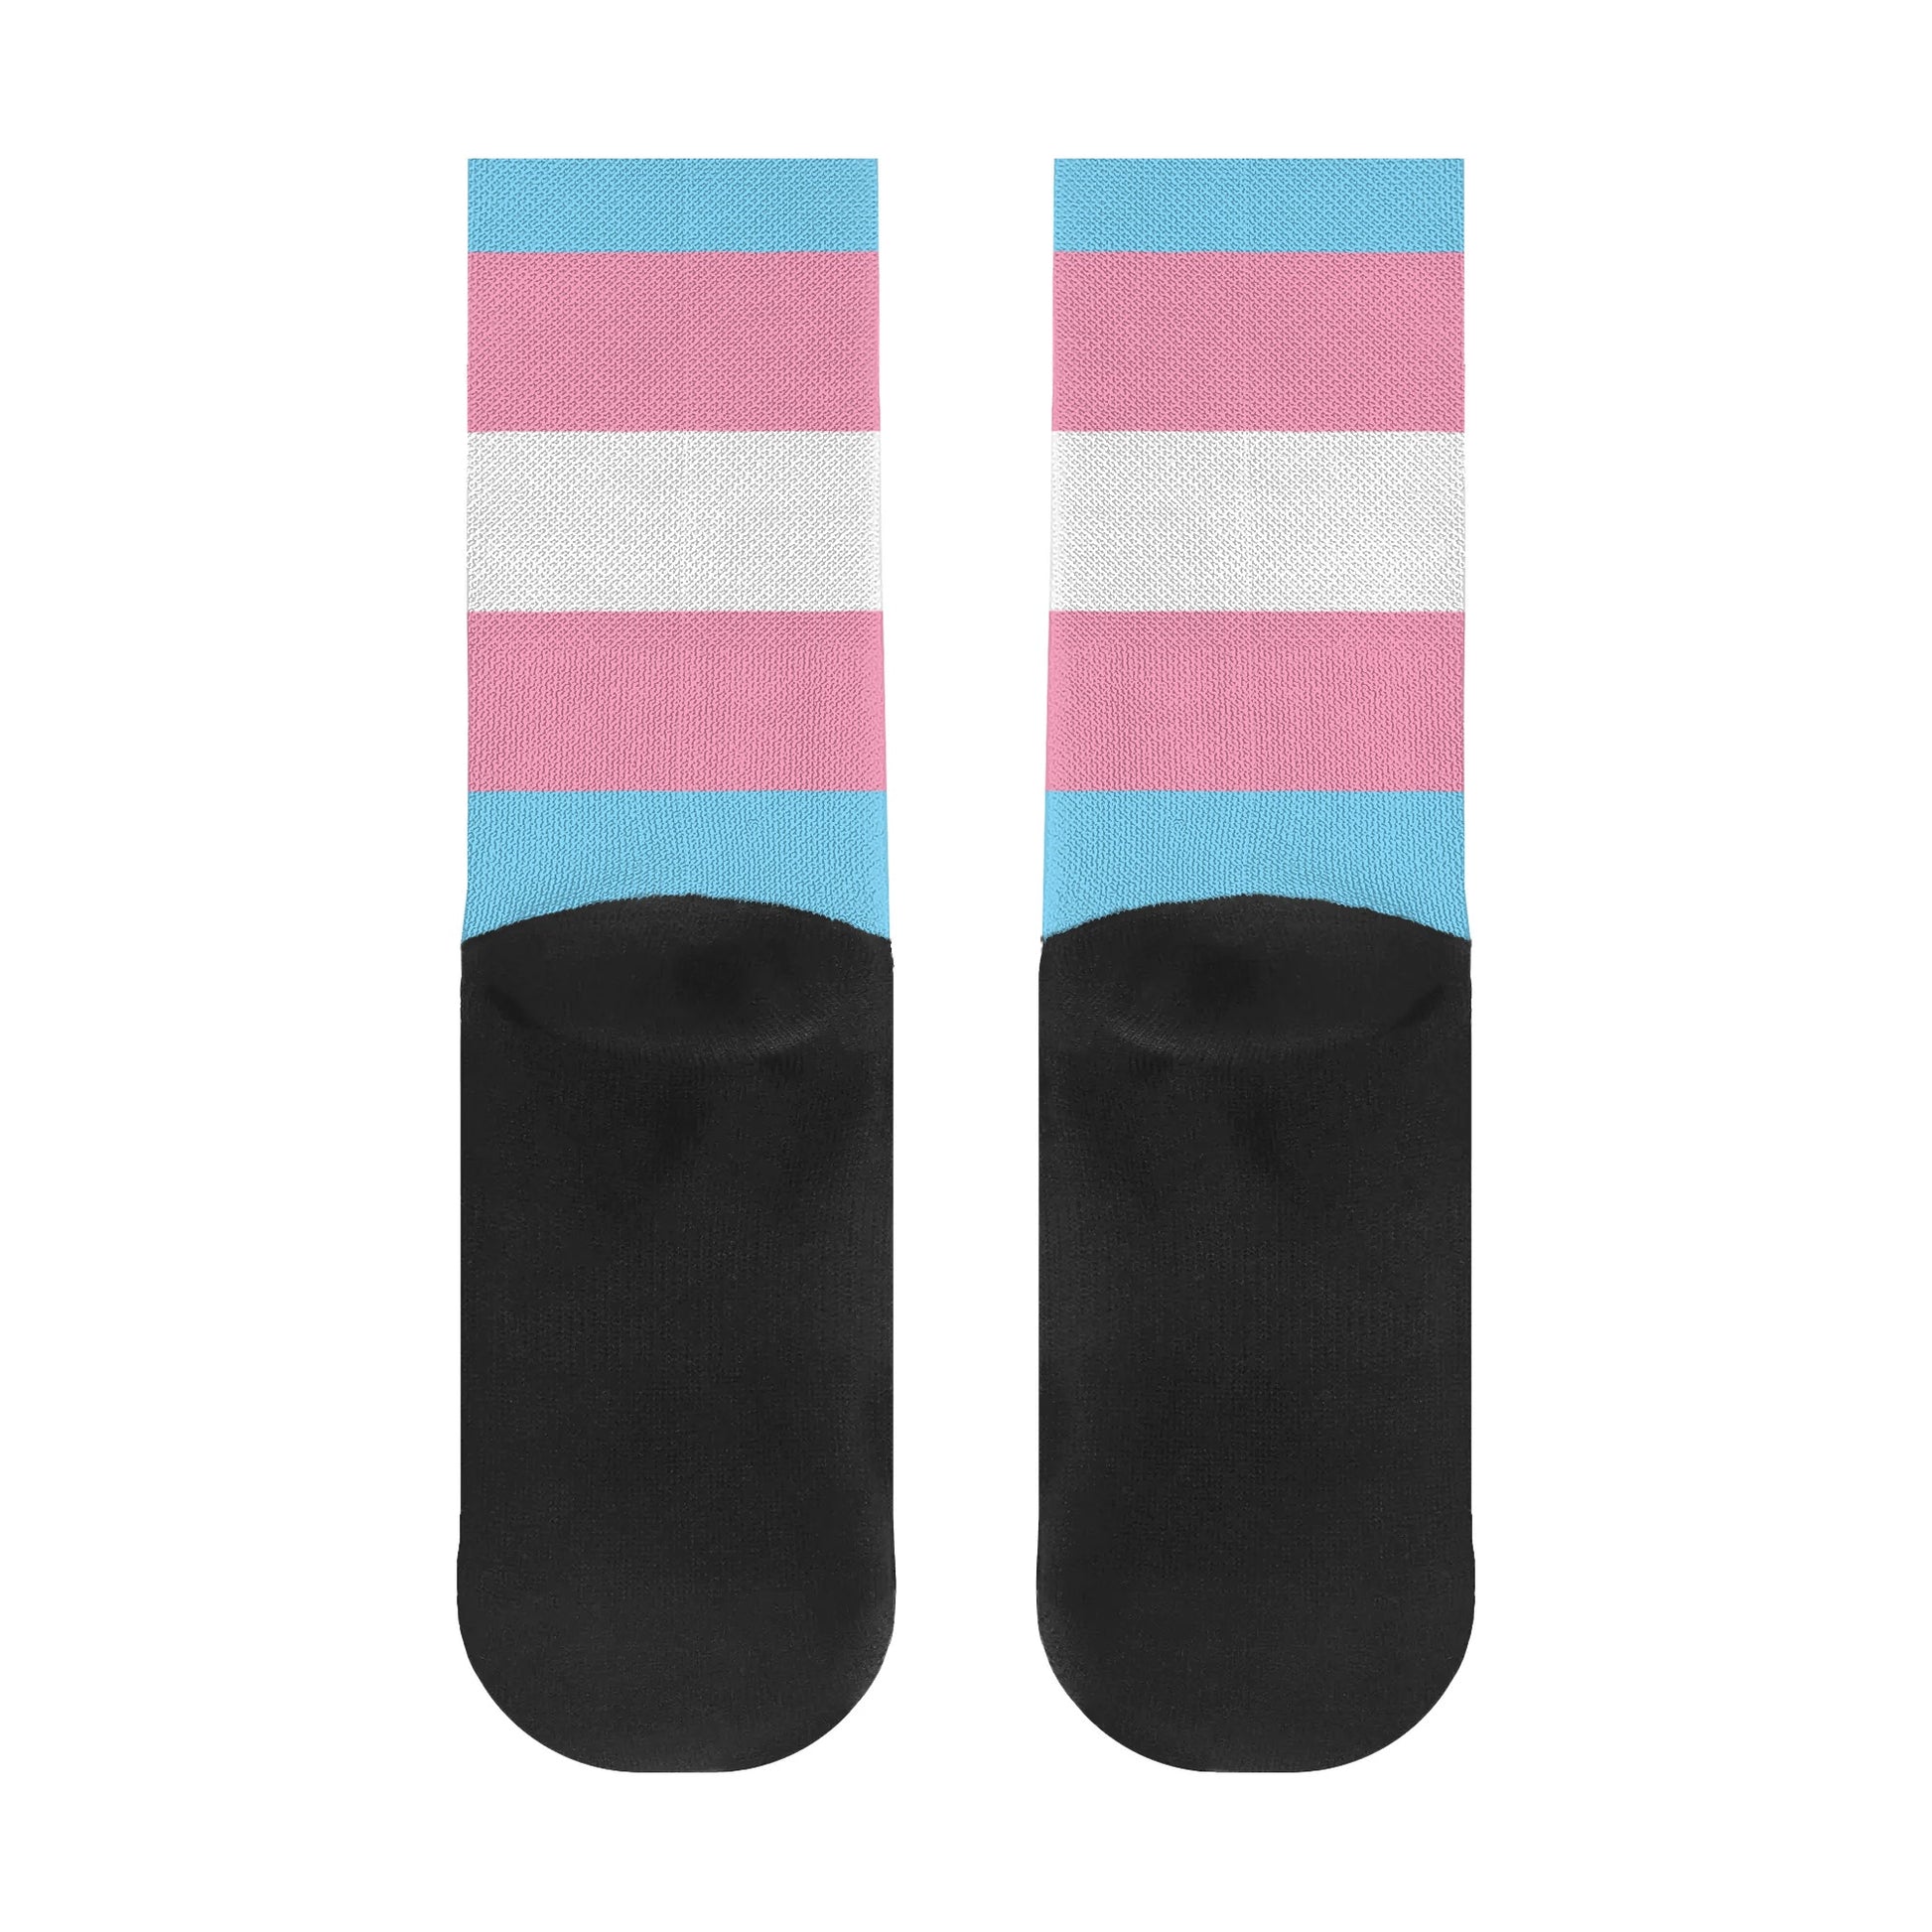 Transgender Pride Flag Crew Socks - Rose Gold Co. Shop